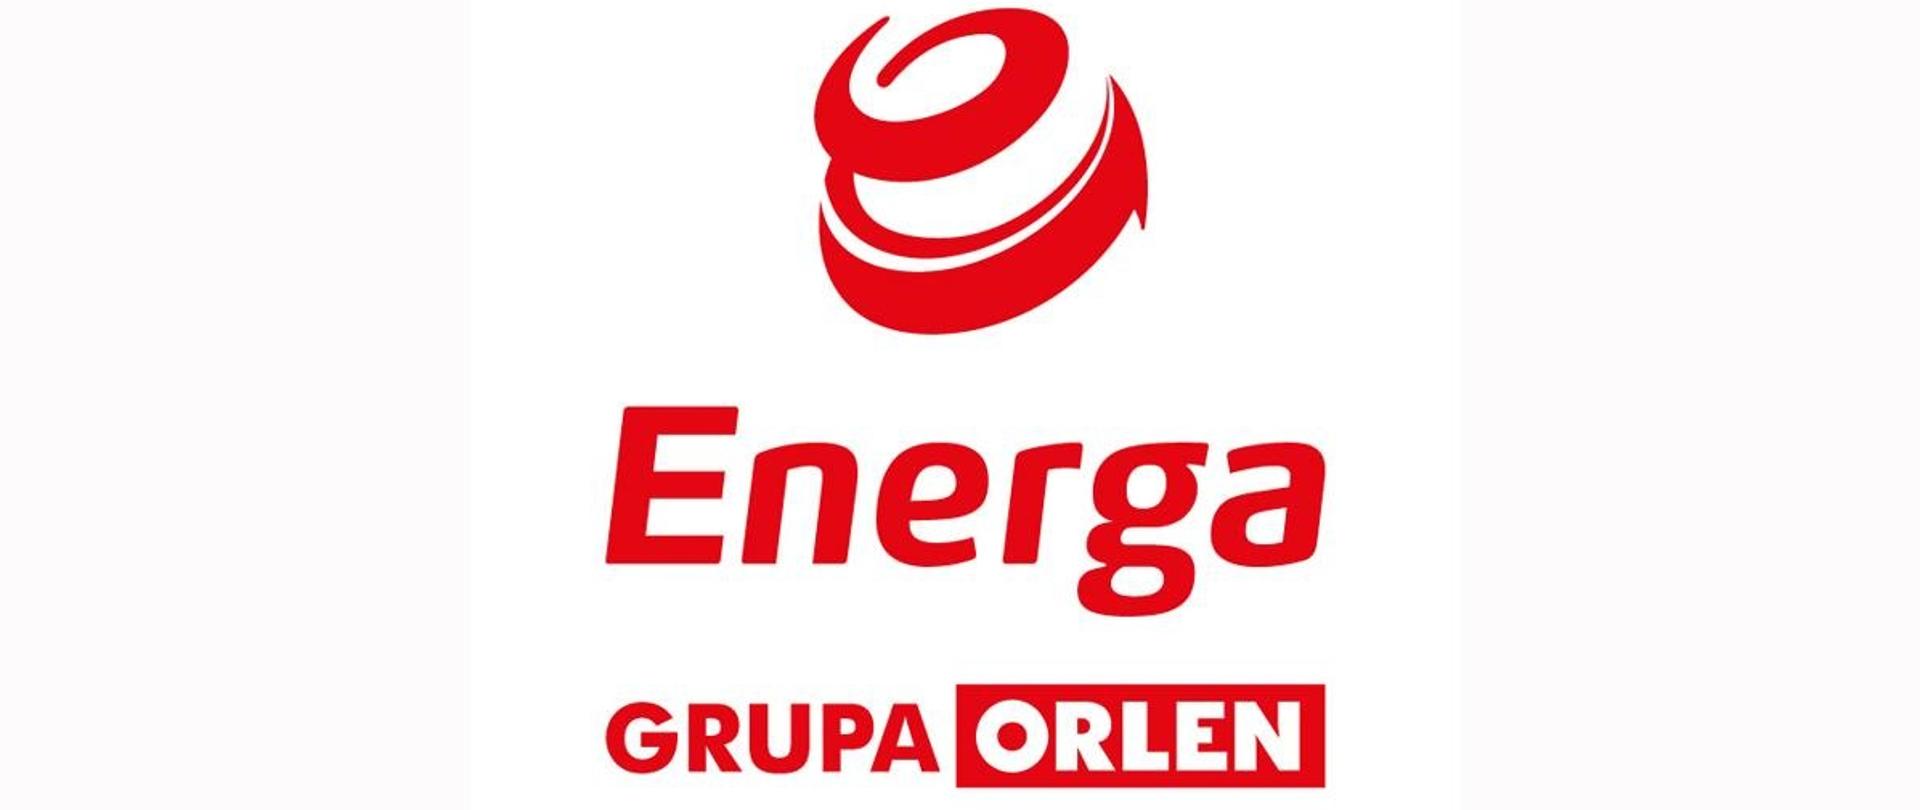 Na białym tle czerwony napis Logo Energa Grupa ORLEN i czerwony znak graficzny czerwonej wstążki zwiniętej na kształt kuli.